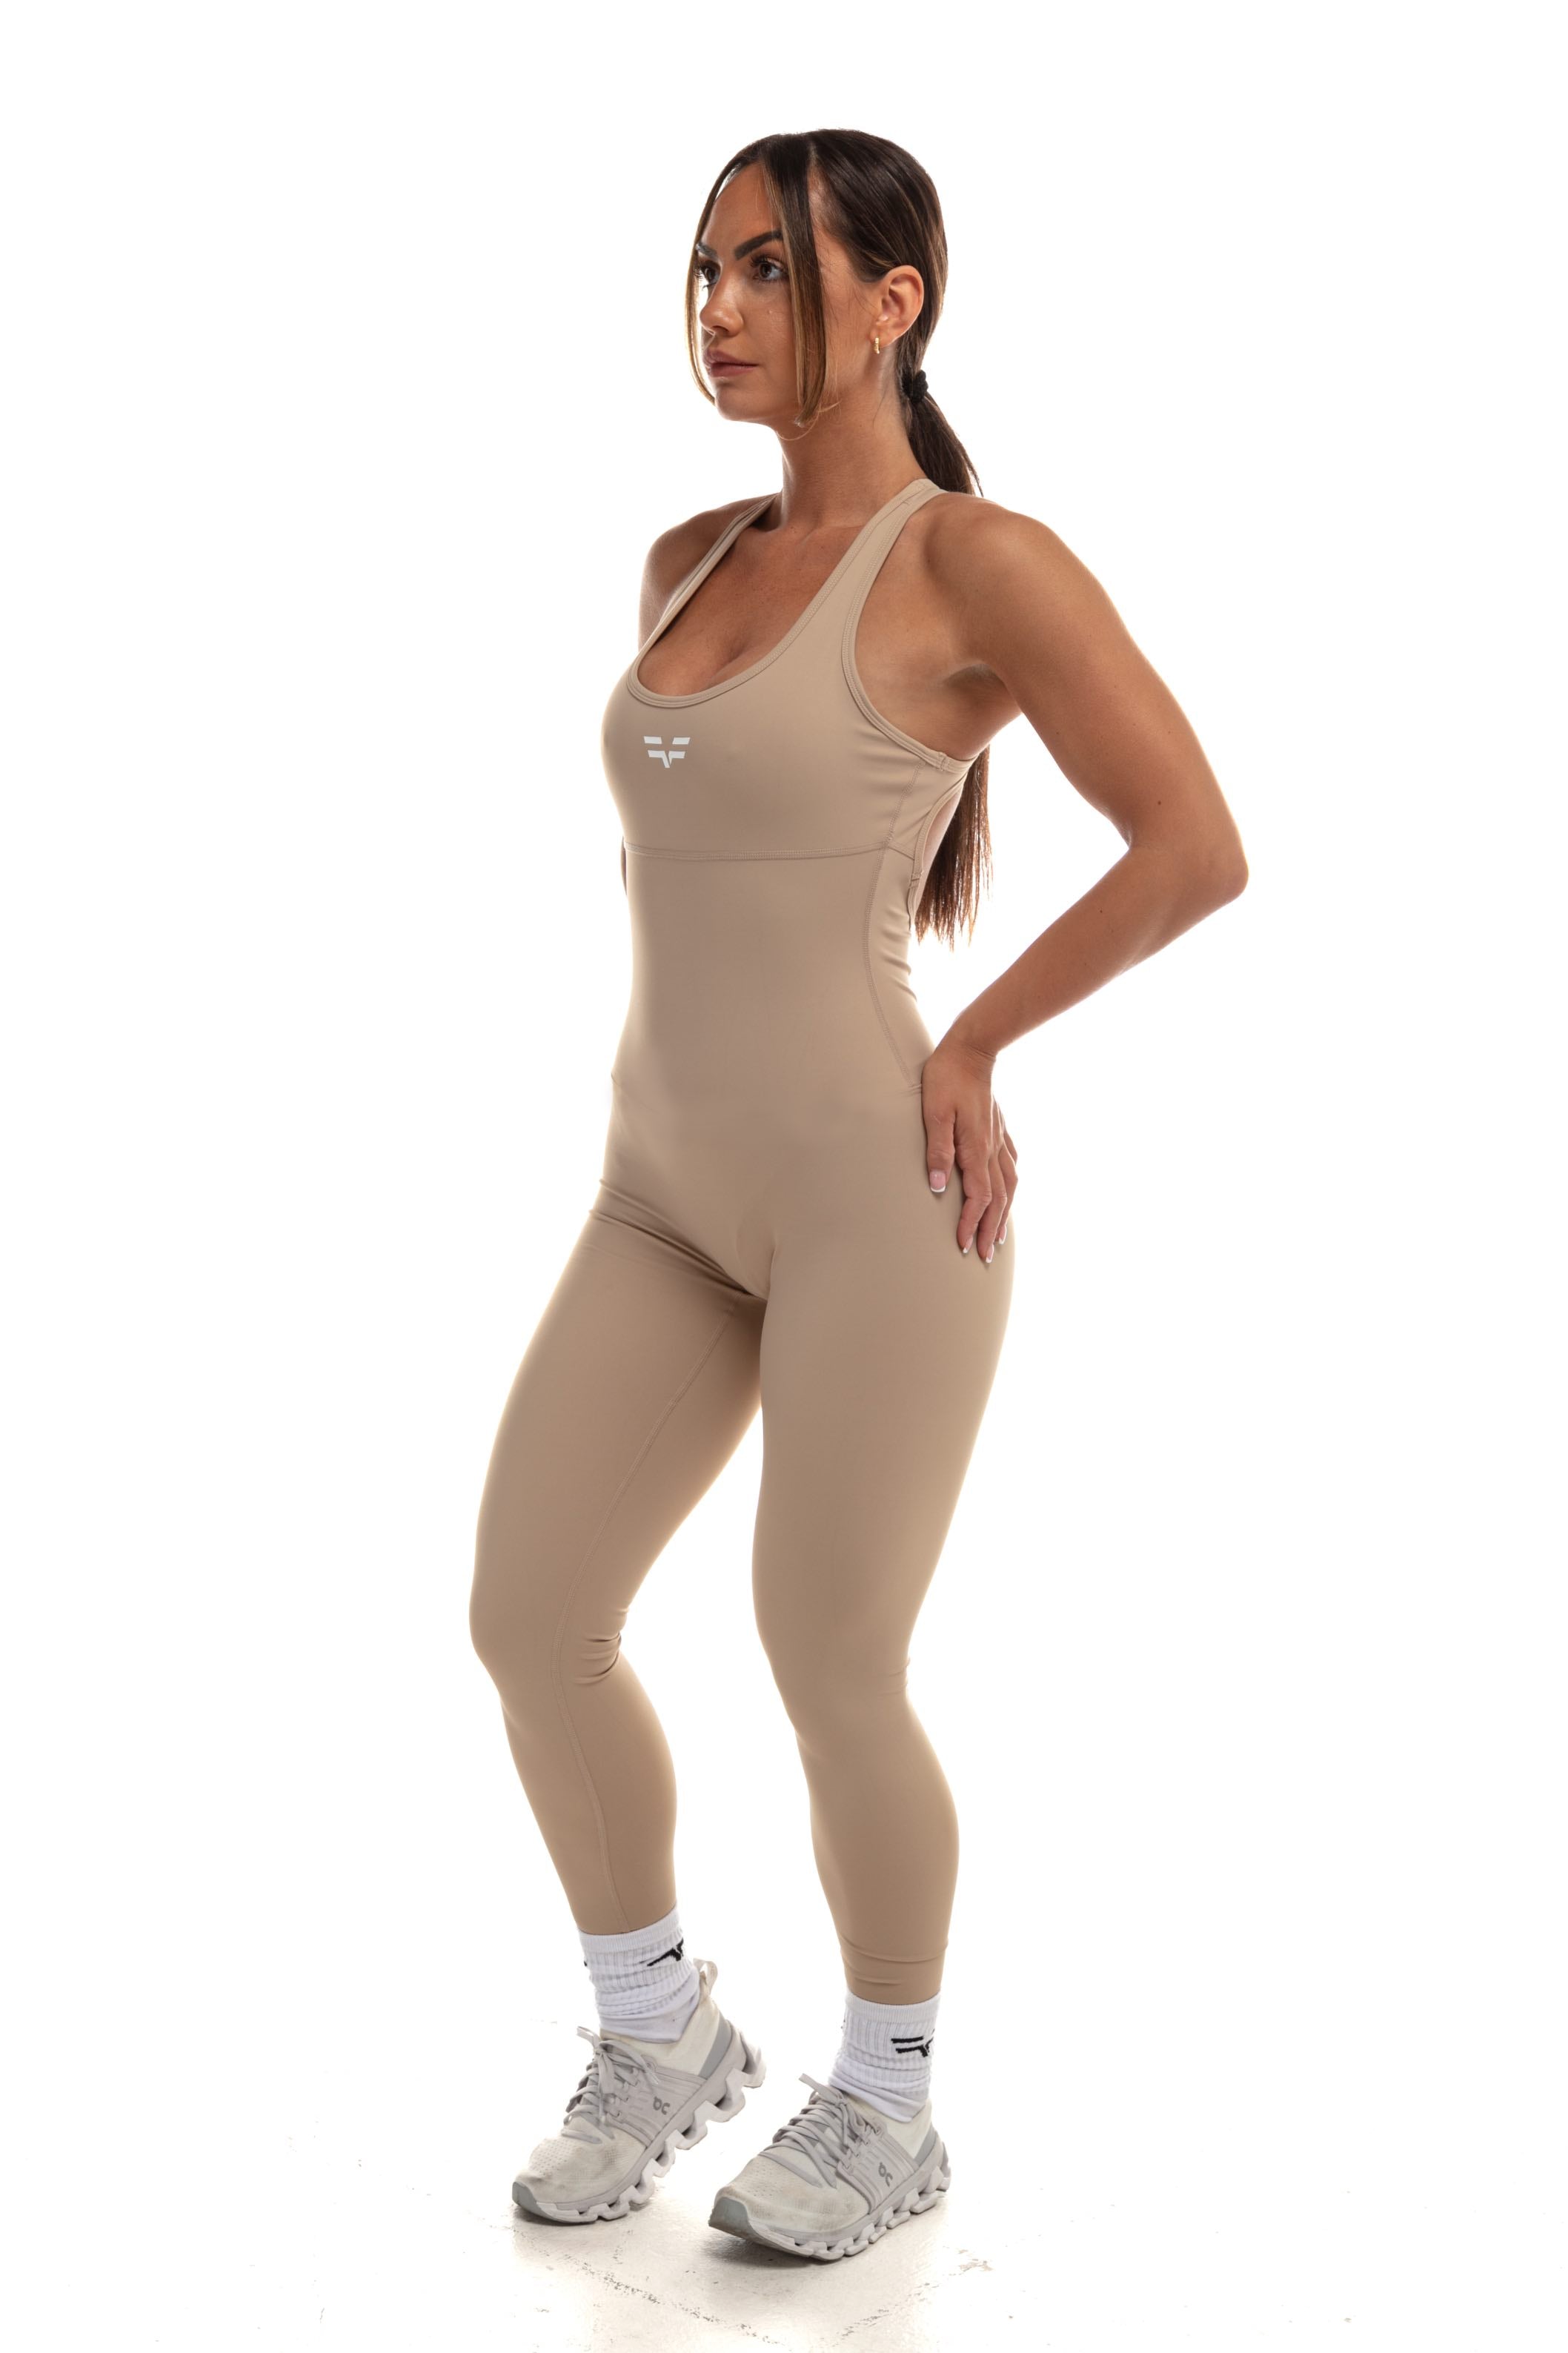 GymFreak Women's Vision Unitard - Sand - legging style